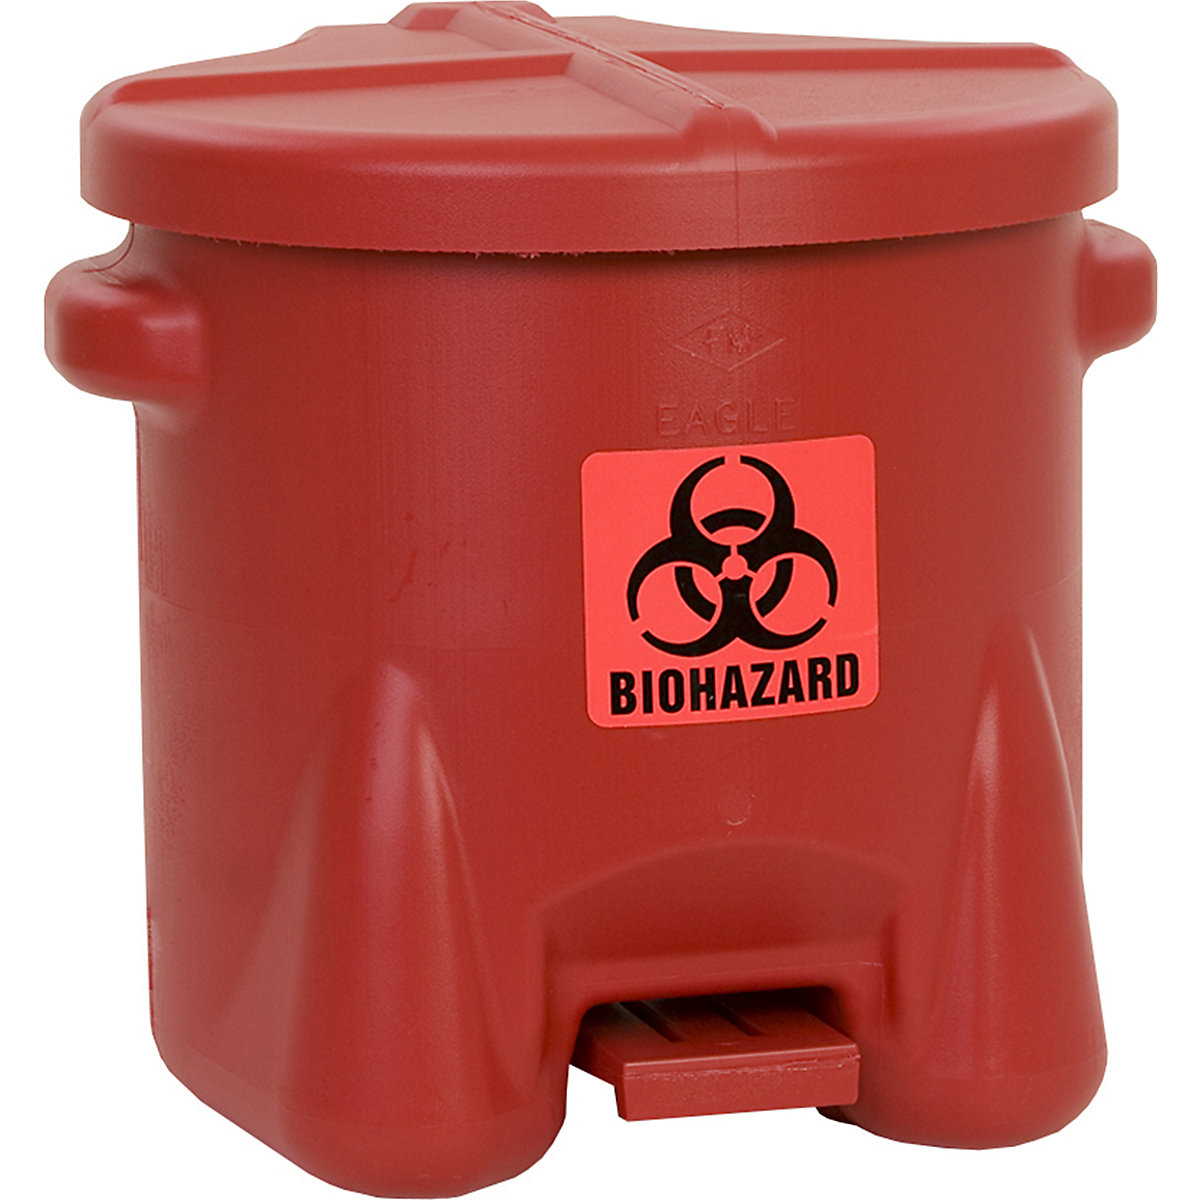 Bezpečnostní nádoba z PE na biologicky nebezpečný odpad - Justrite